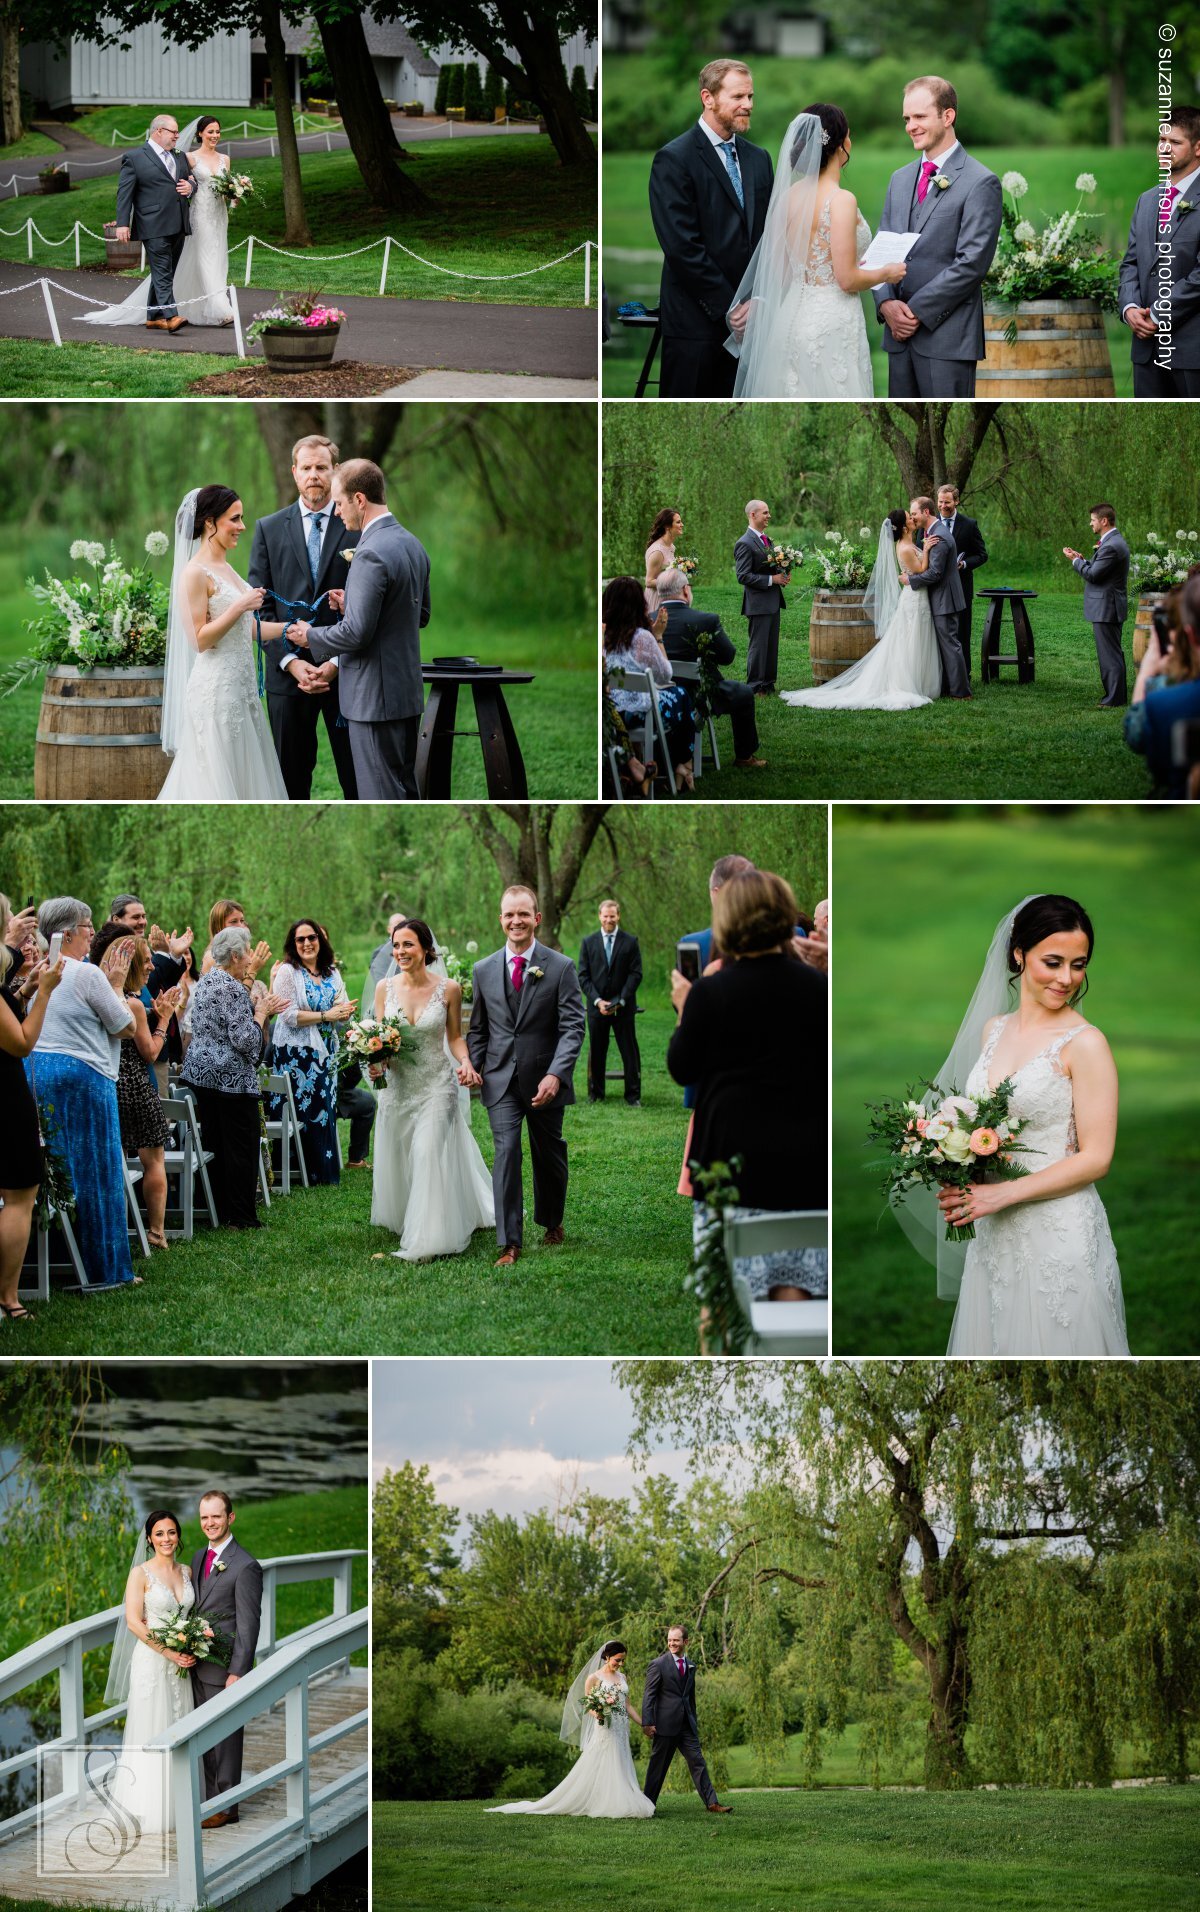 Spring wedding ceremony at The Barns at Wesleyan Hills